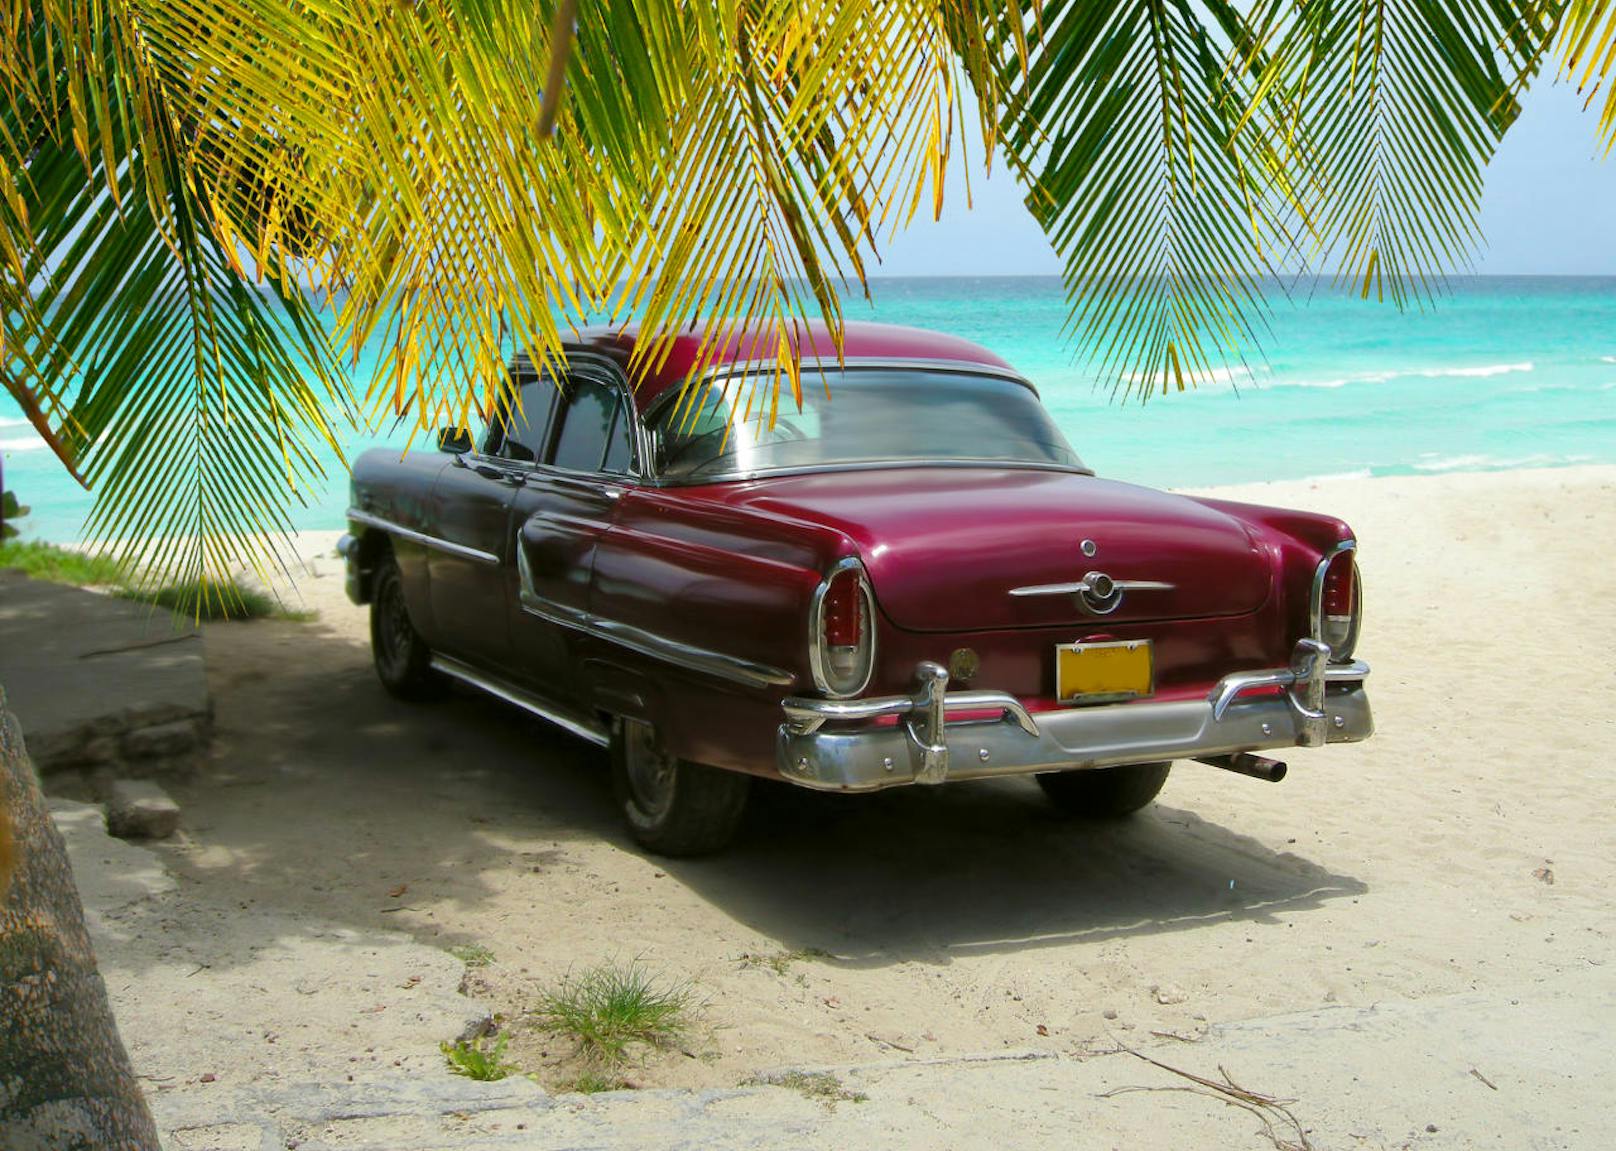 Der Sommer ist bald vorbei, also nix wie weit weg! Von November bis Jänner bieten sich die Trend-Destinationen Kuba und Dominikanische Republik mit den besten Schnäppchen an.